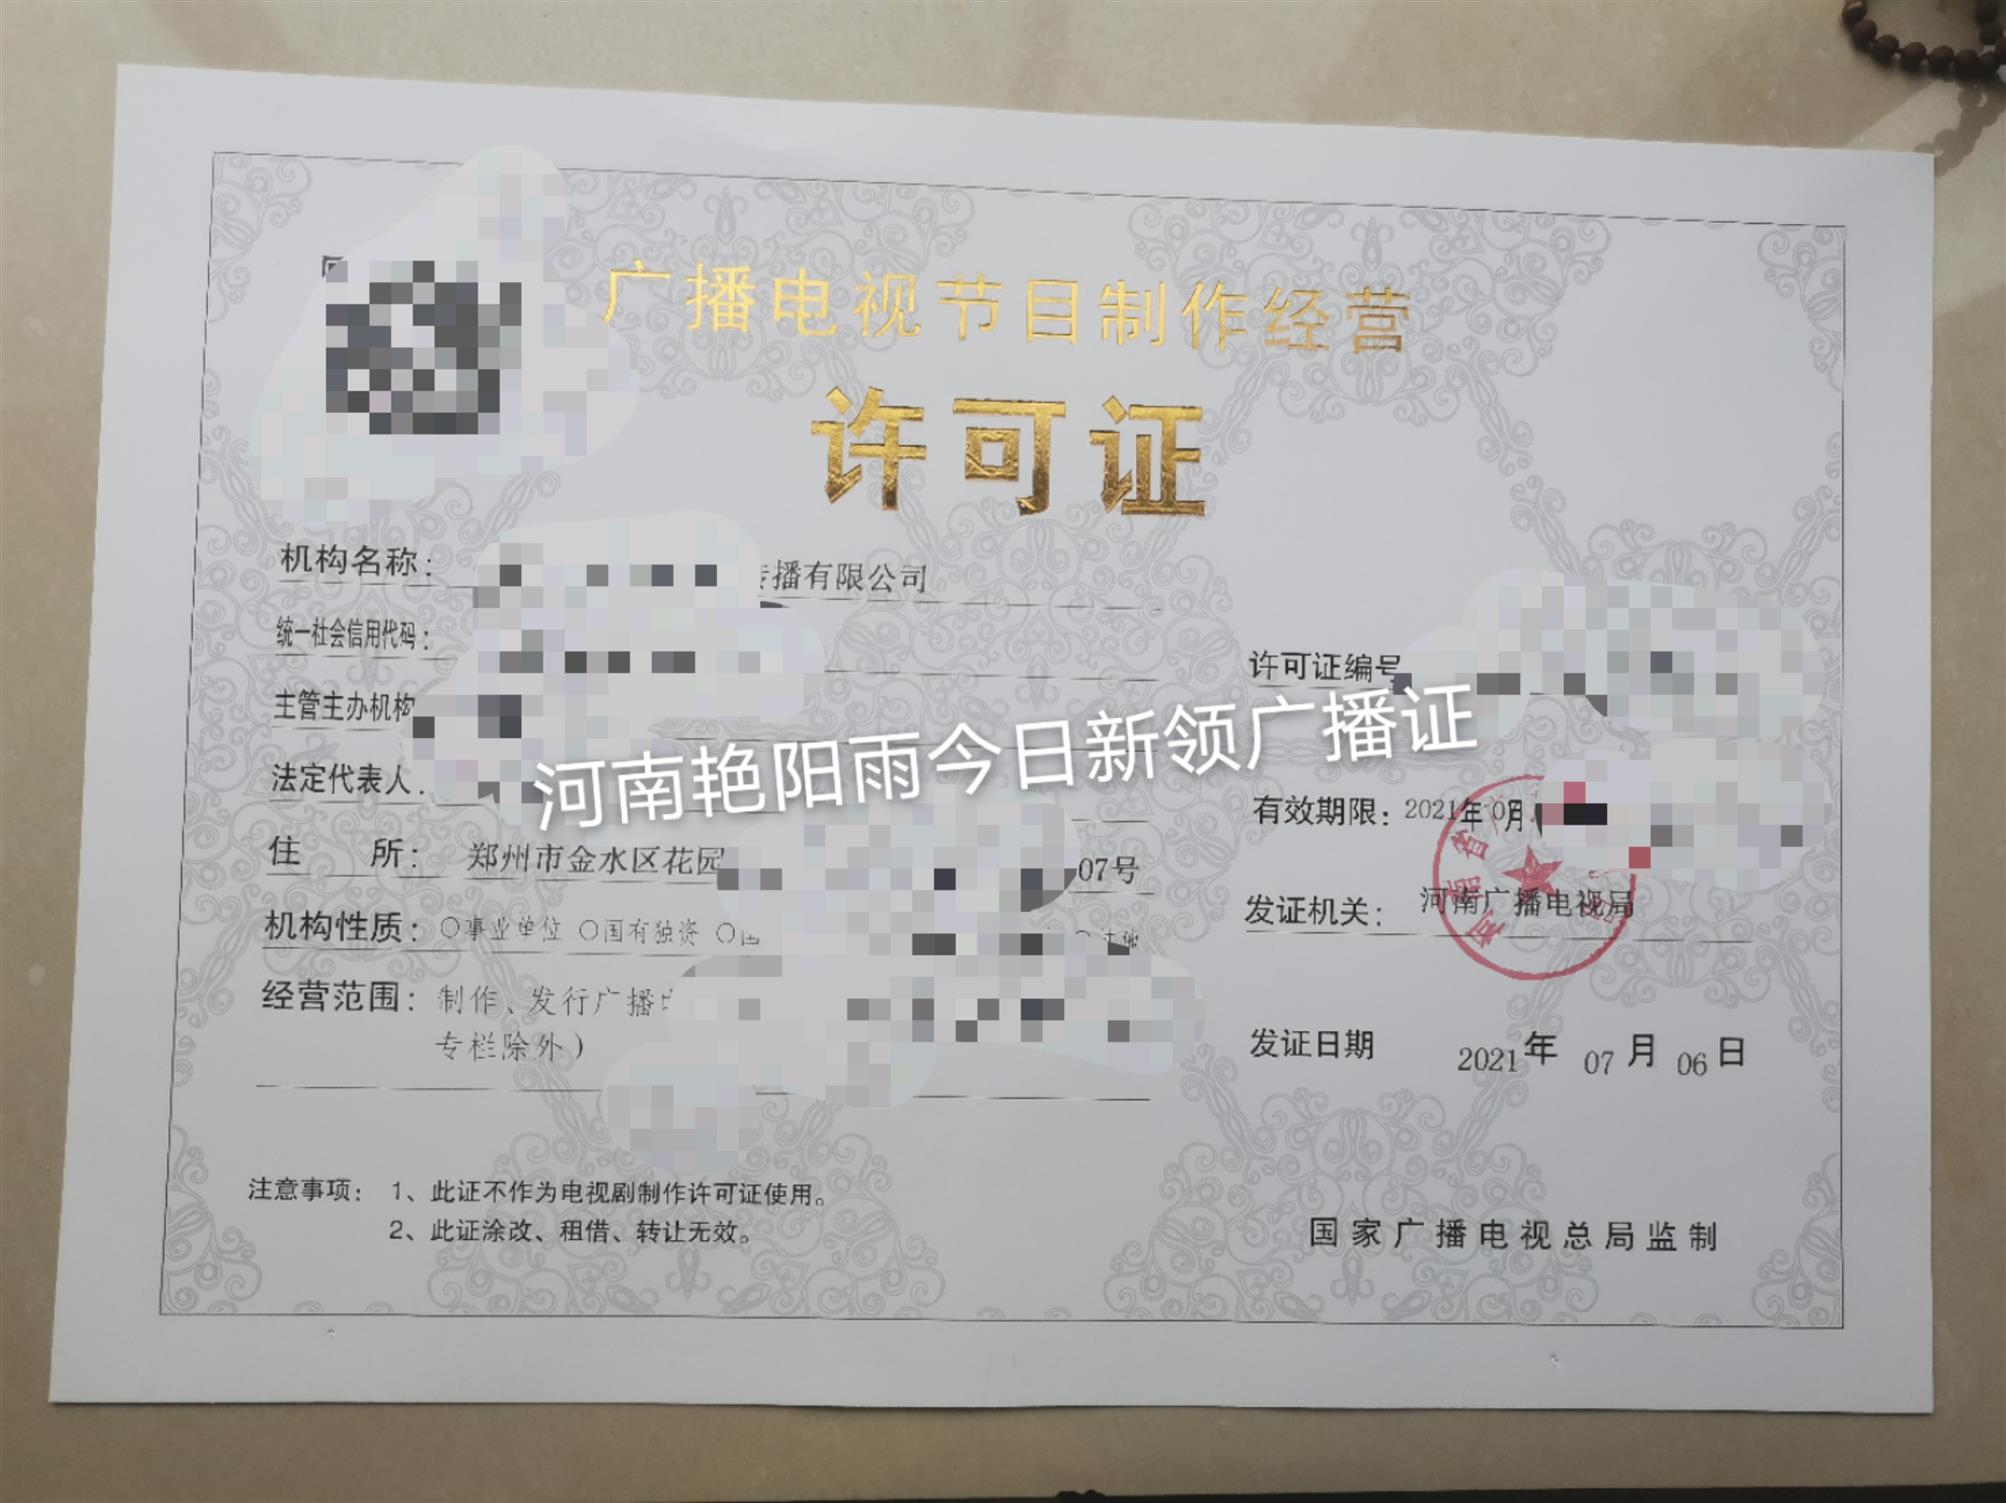 郑州市经开区办理广播电视节目制作经营许可证周期 详情可以加微信